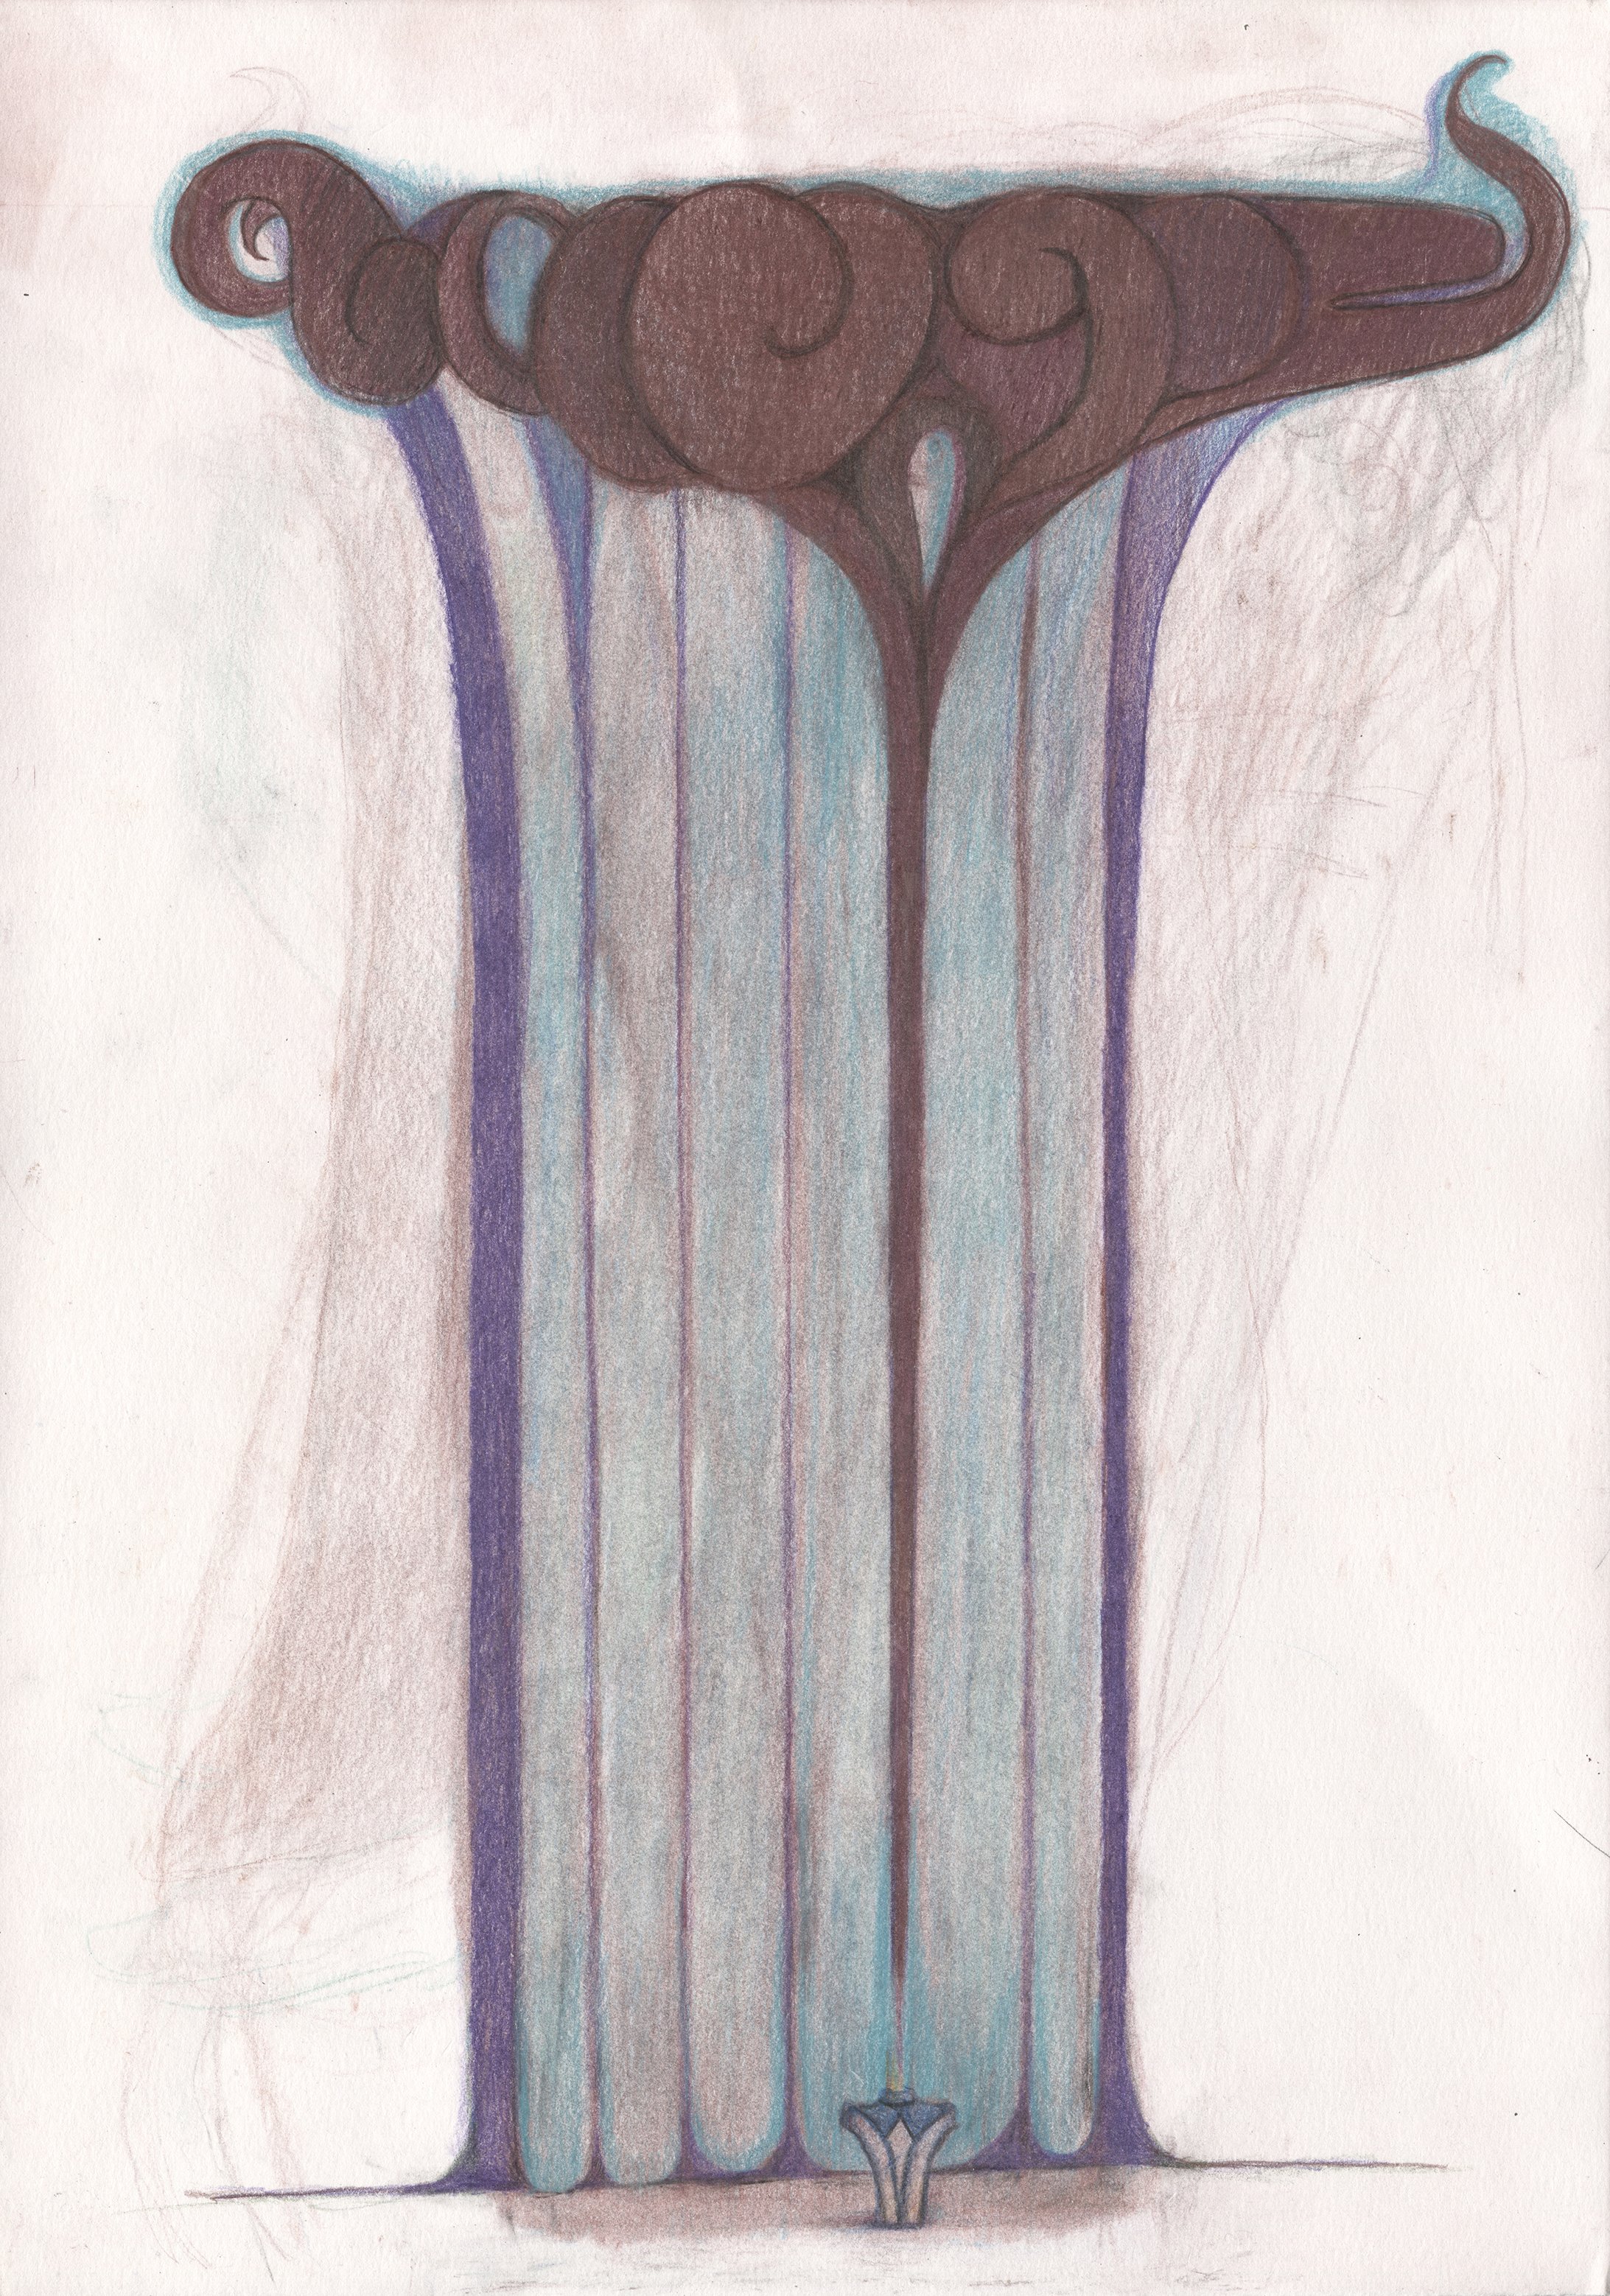  Bottle &amp; Scent, Coloured pencil on paper, 34 x 27 cm, 2022 